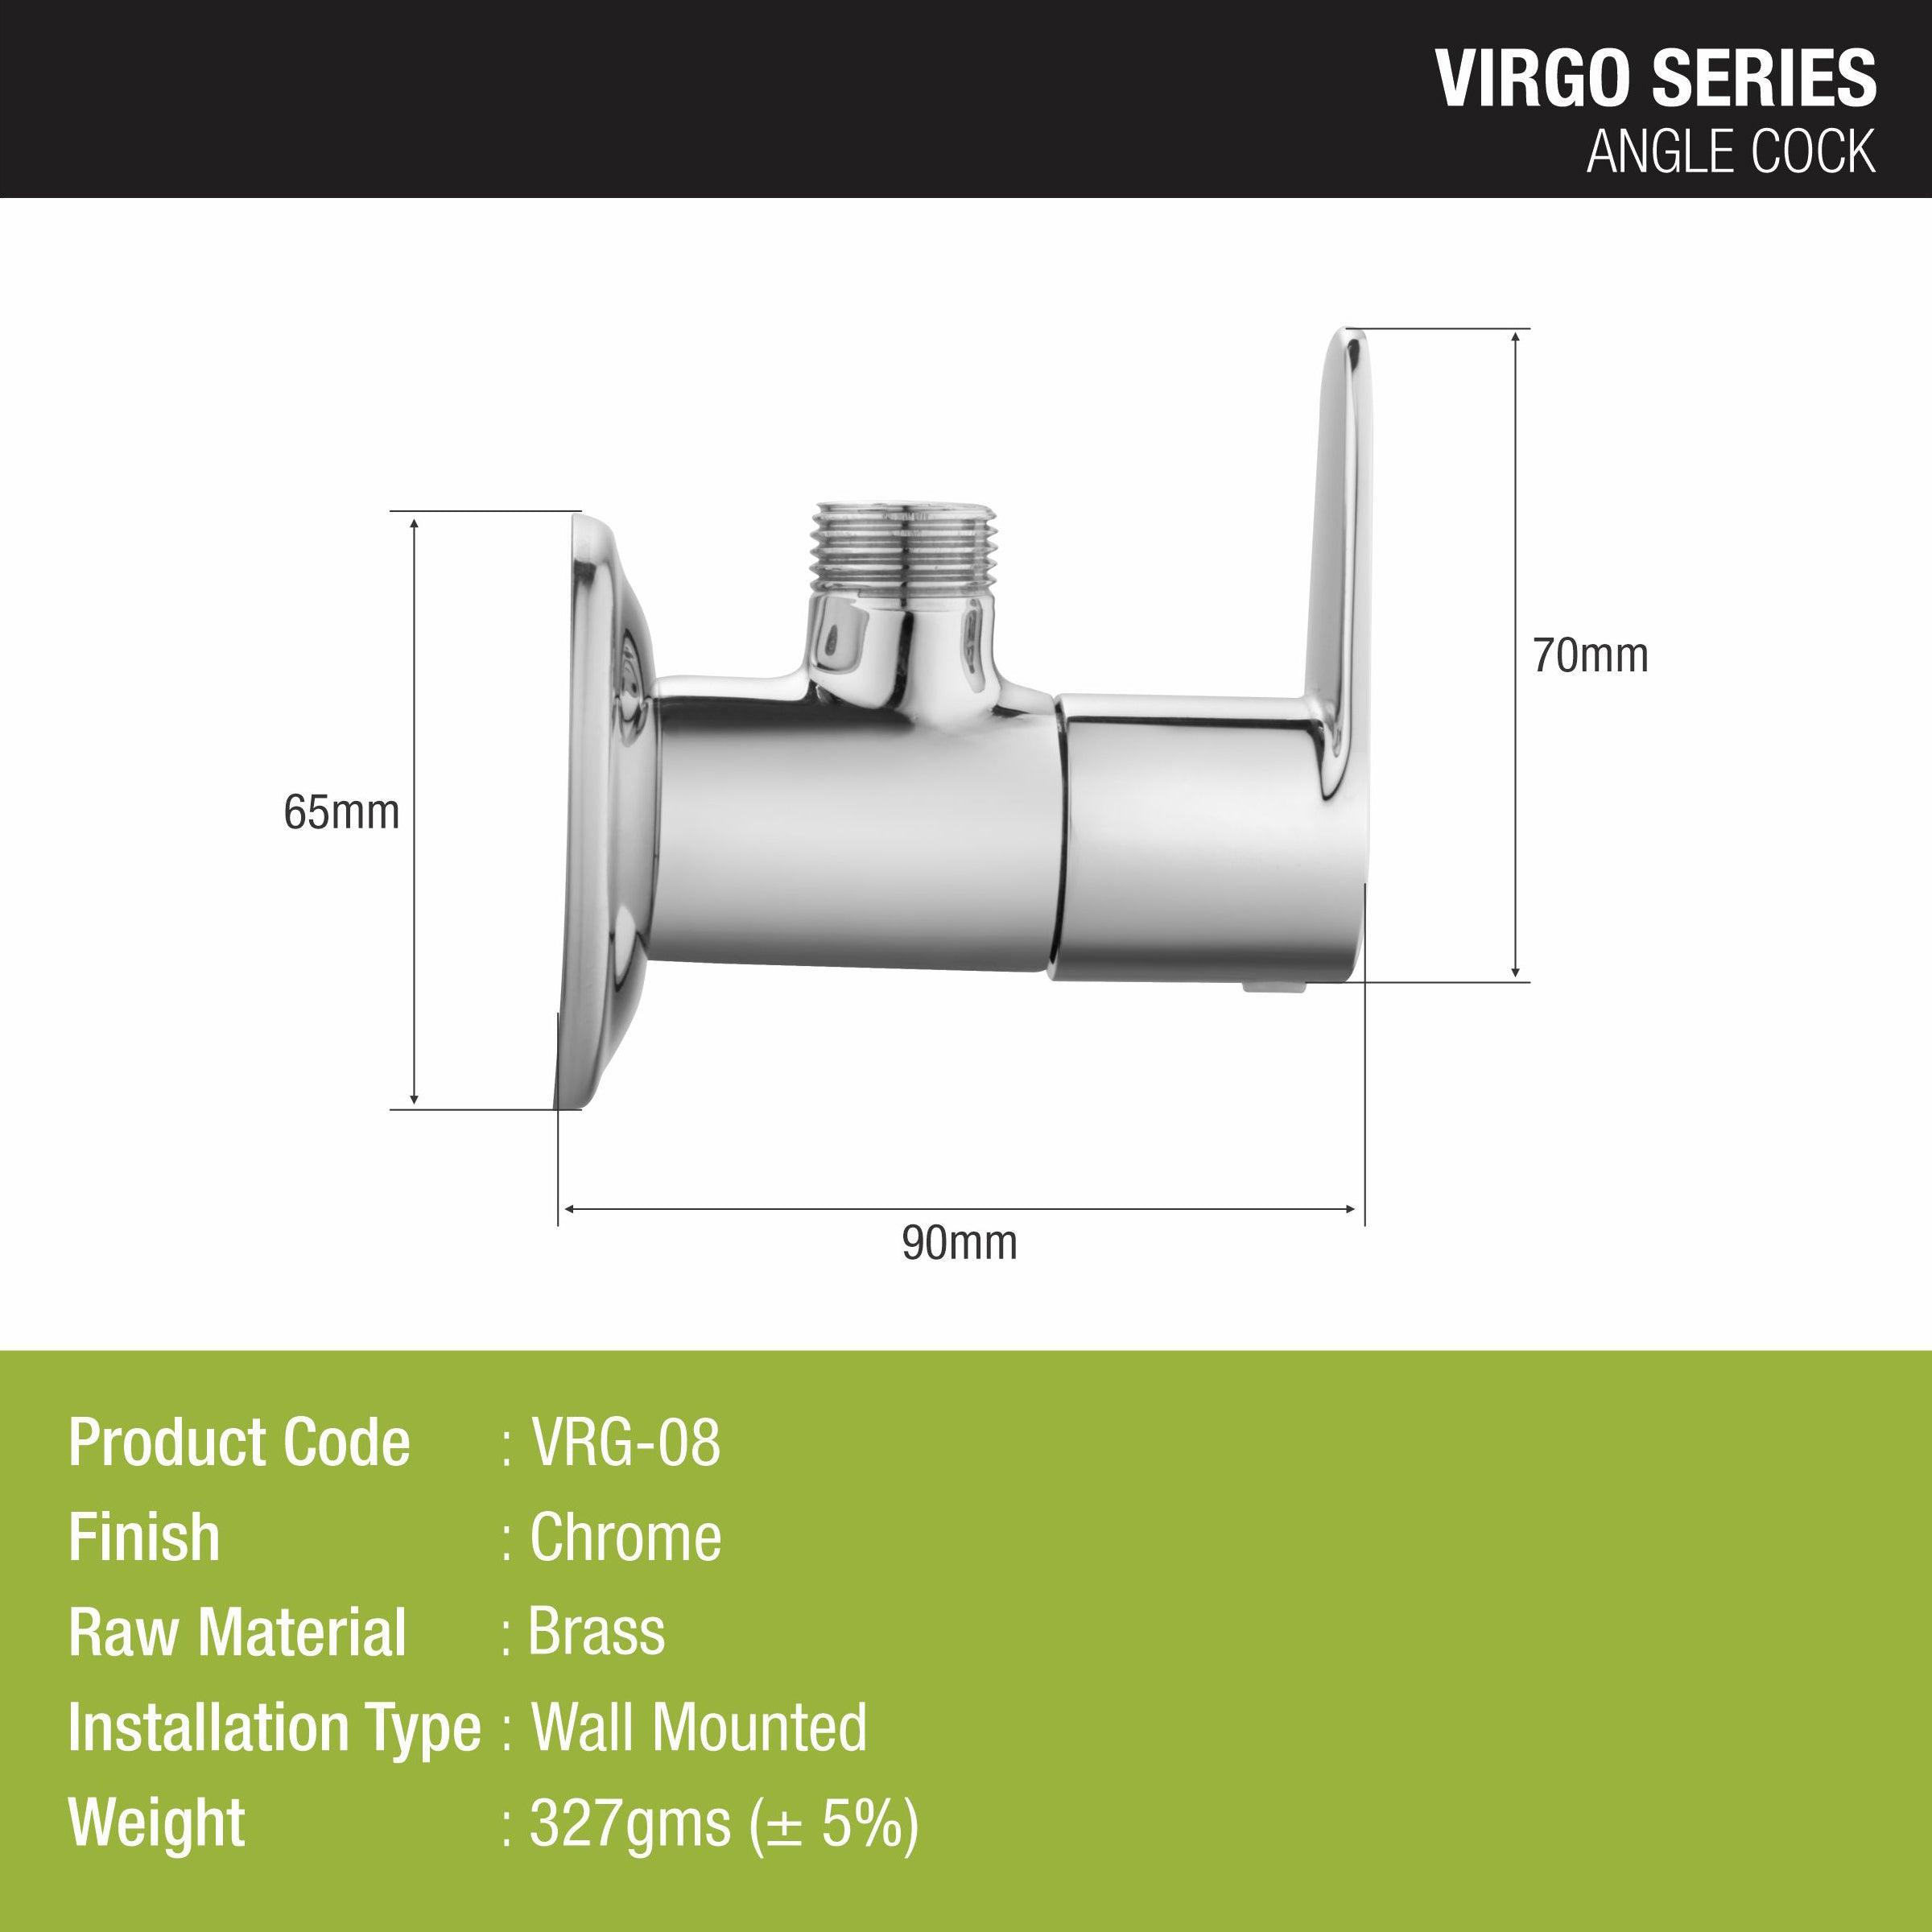 Virgo Angle Valve Brass Faucet - LIPKA - Lipka Home